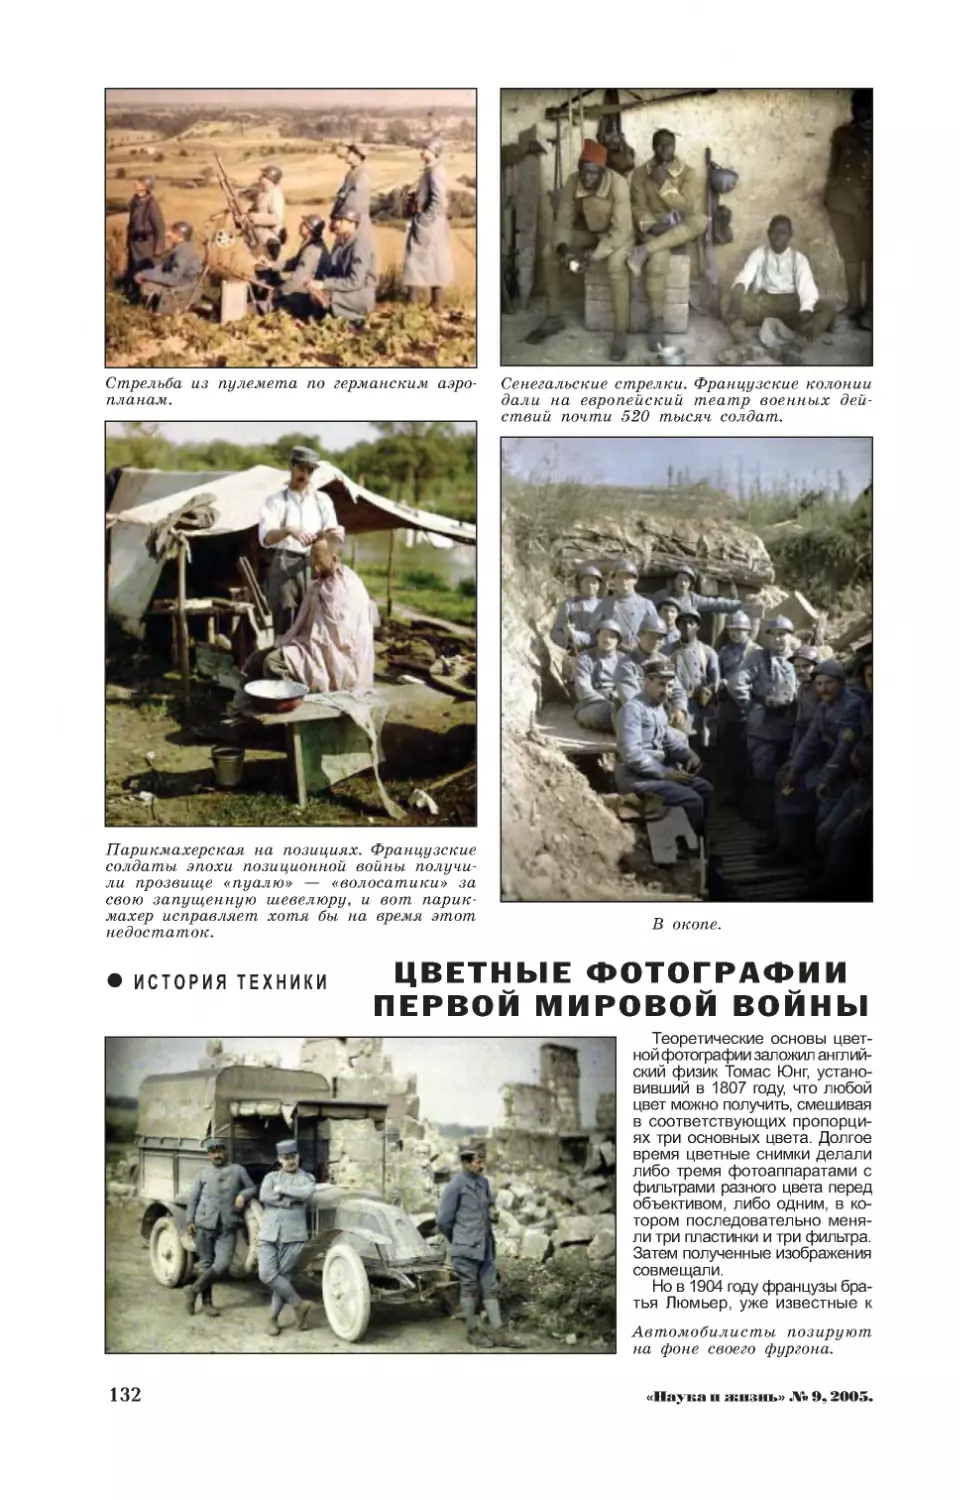 Ю. ФРОЛОВ — Цветные фотографии Первой мировой войны